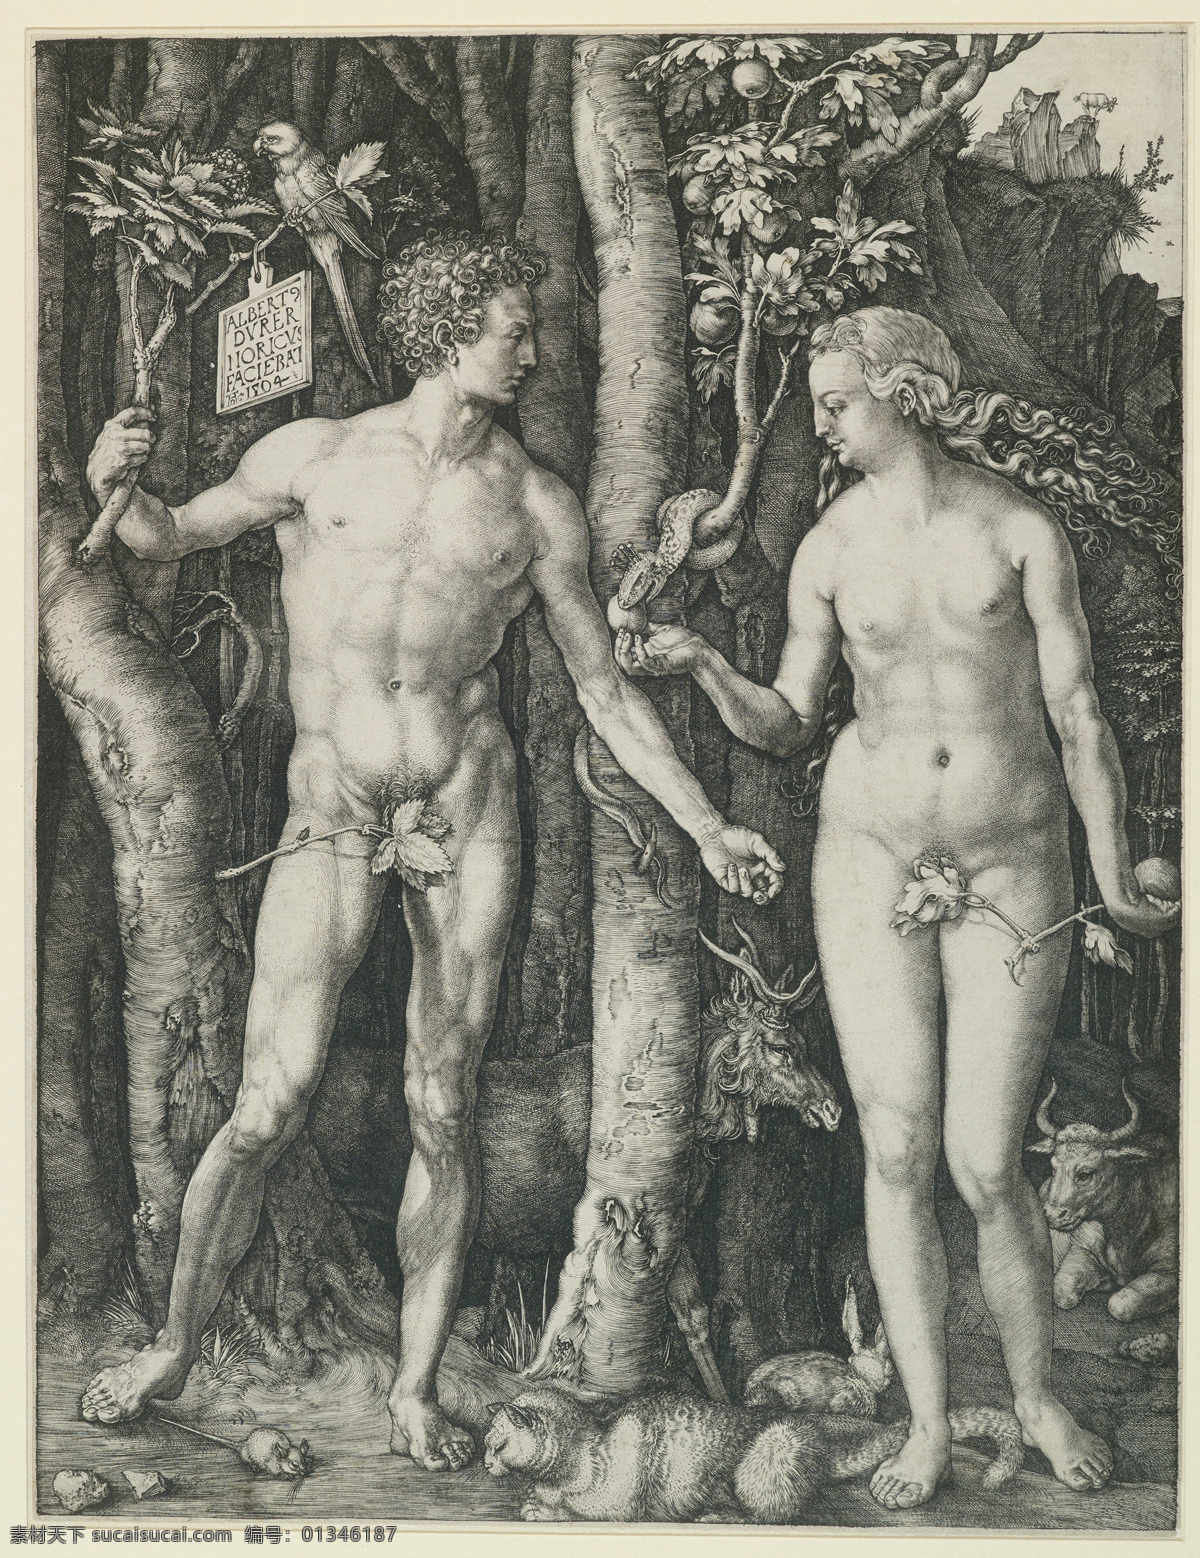 亚当与夏娃 亚当 夏娃 人类 祖先 蛇 苹果树 上帝 圣经 传说 伊甸园 绘画 艺术 铜版画 经典 绘画书法 文化艺术